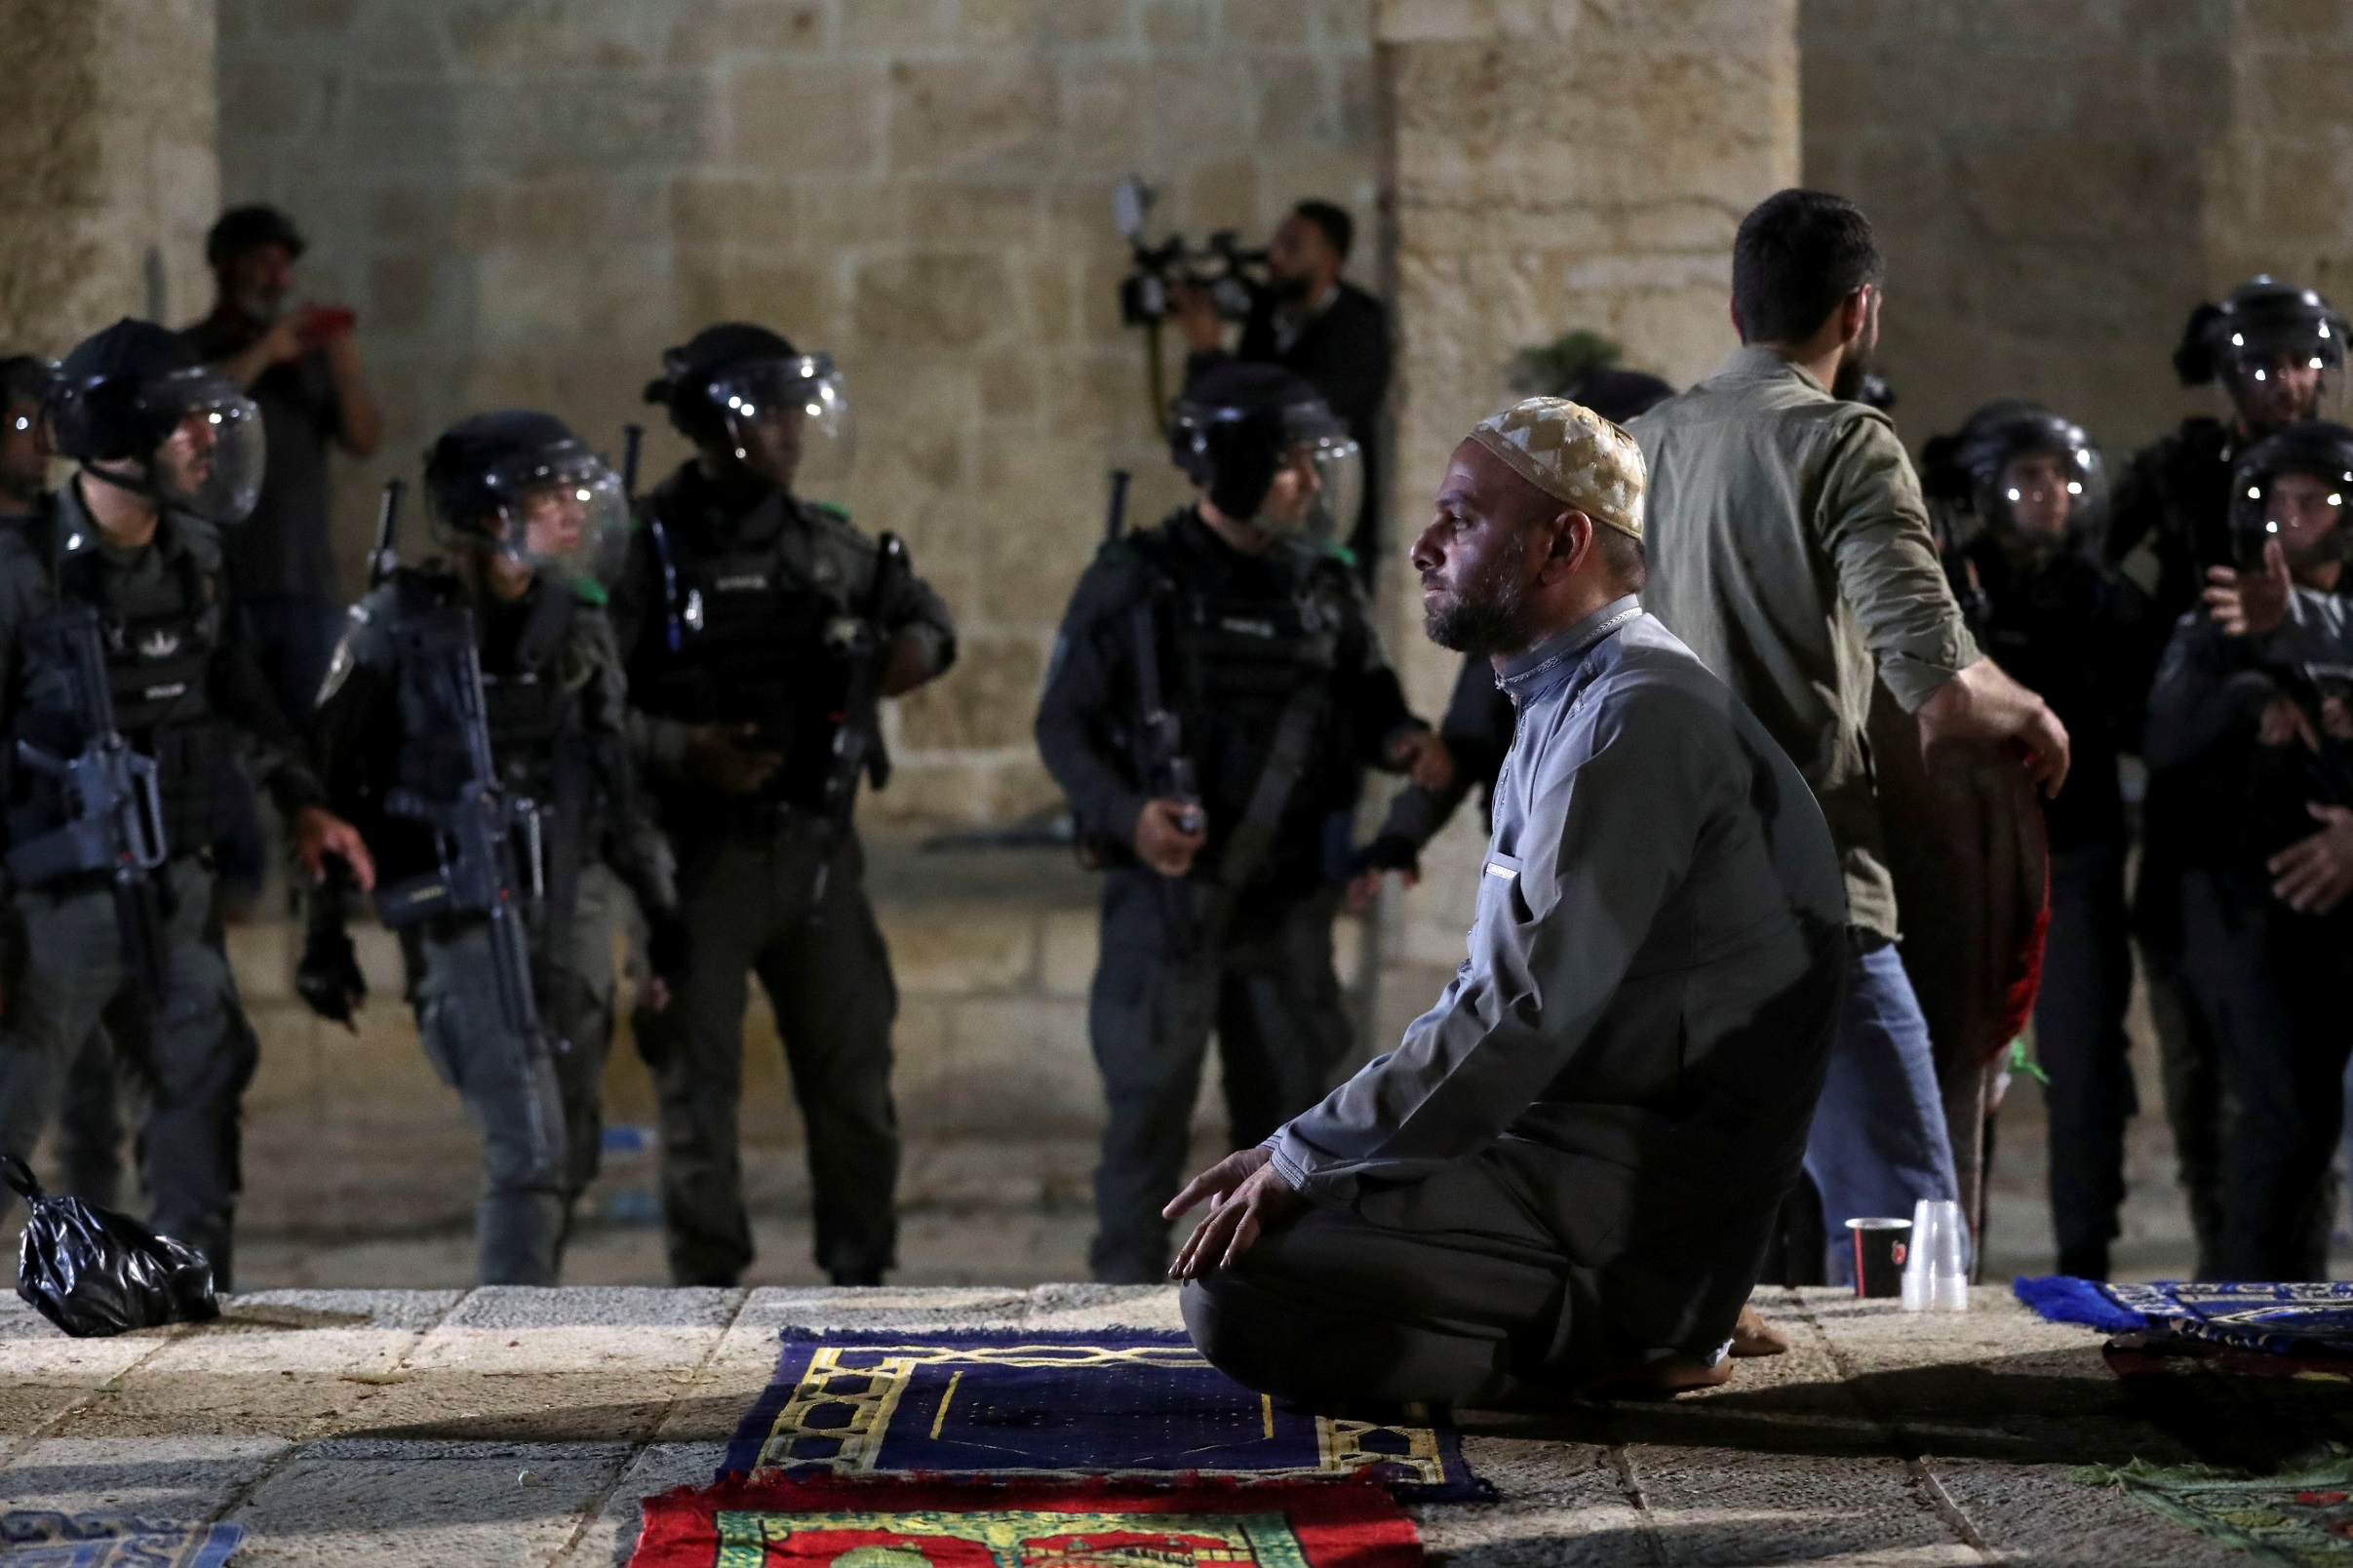 فلسطيني يؤدي الصلاة بعد اقتحام شرطة الاحتلال الإسرائيلي للمسجد الأقصى في القدس المحتلة، 7 أيار/مايو 2021. (رويترز)